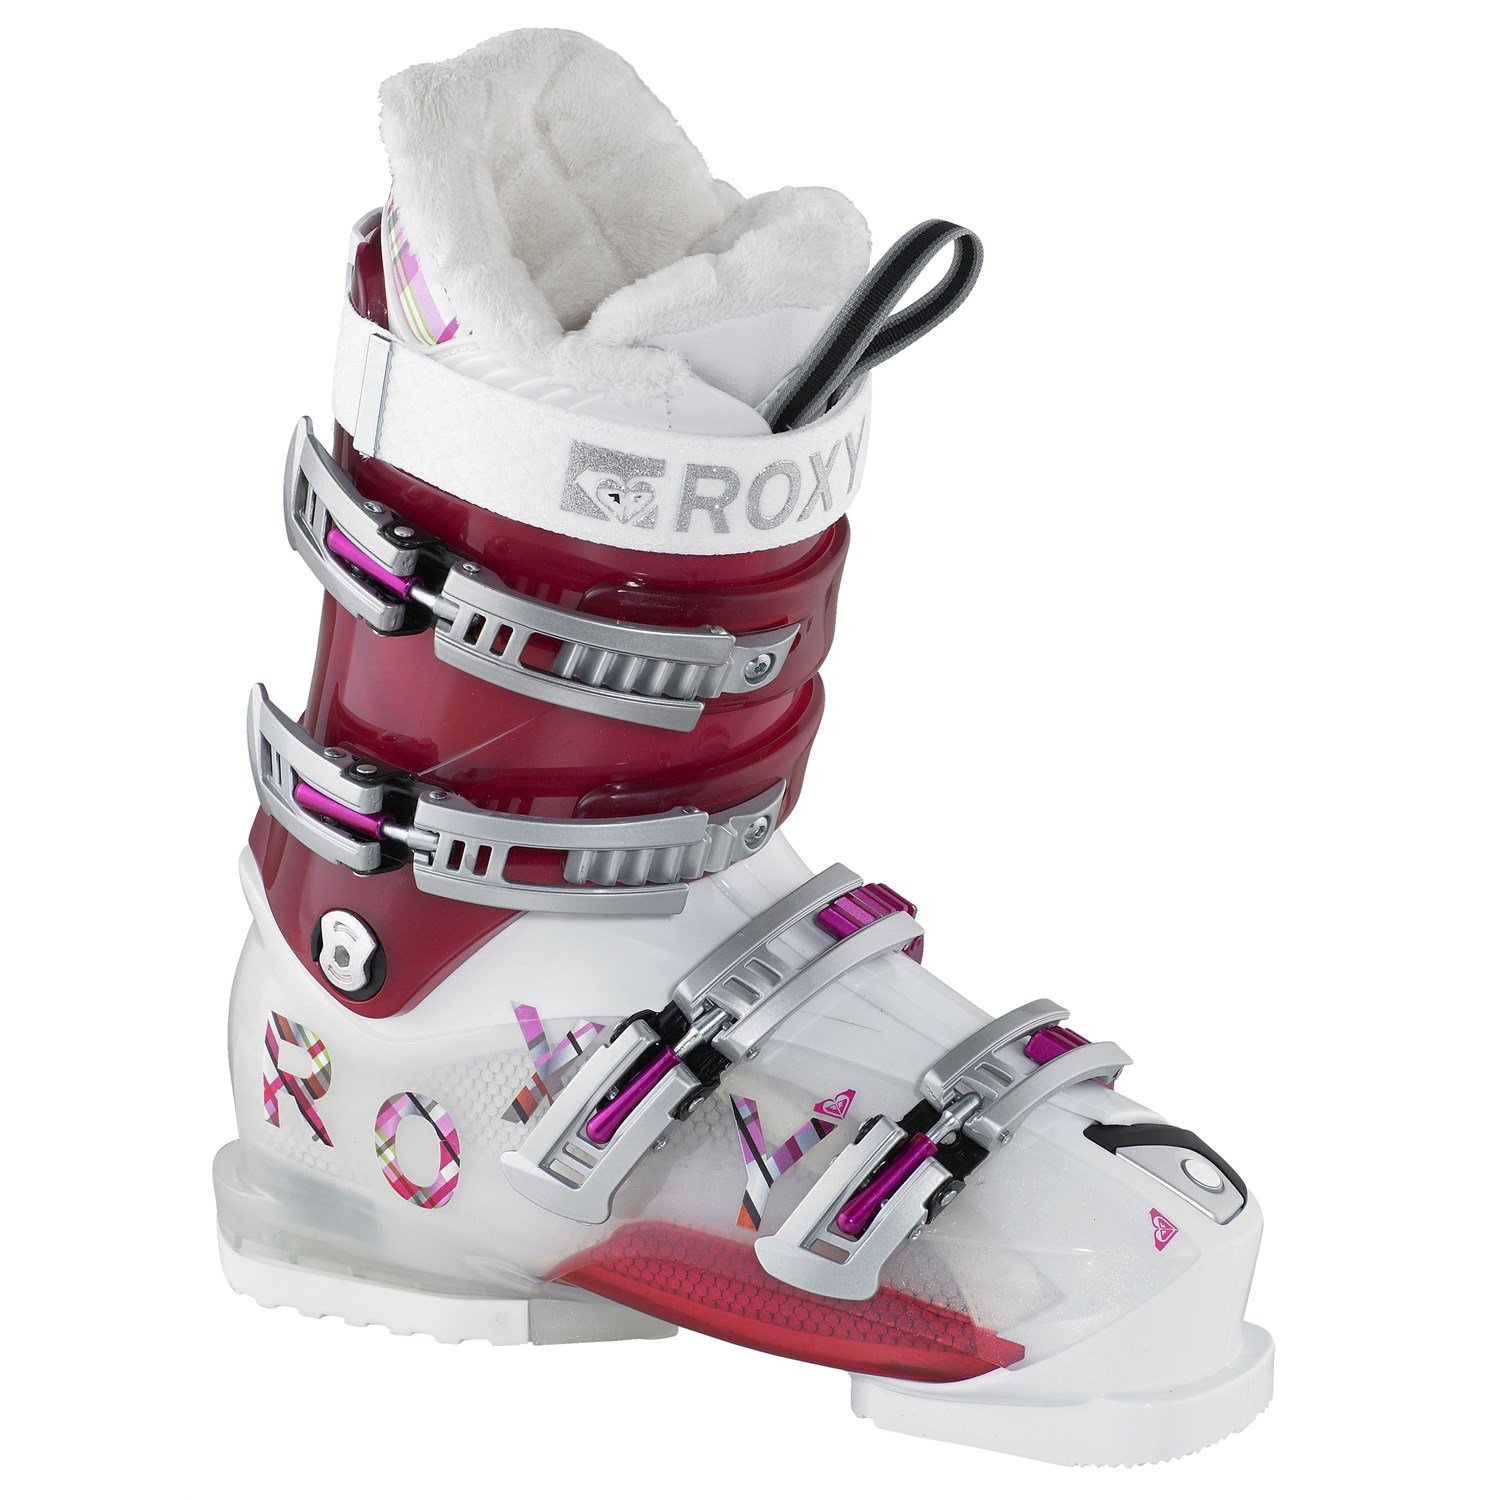 Bekritiseren contrast Manoeuvreren Roxy Bliss Ski Boots - Women's 2010 | evo